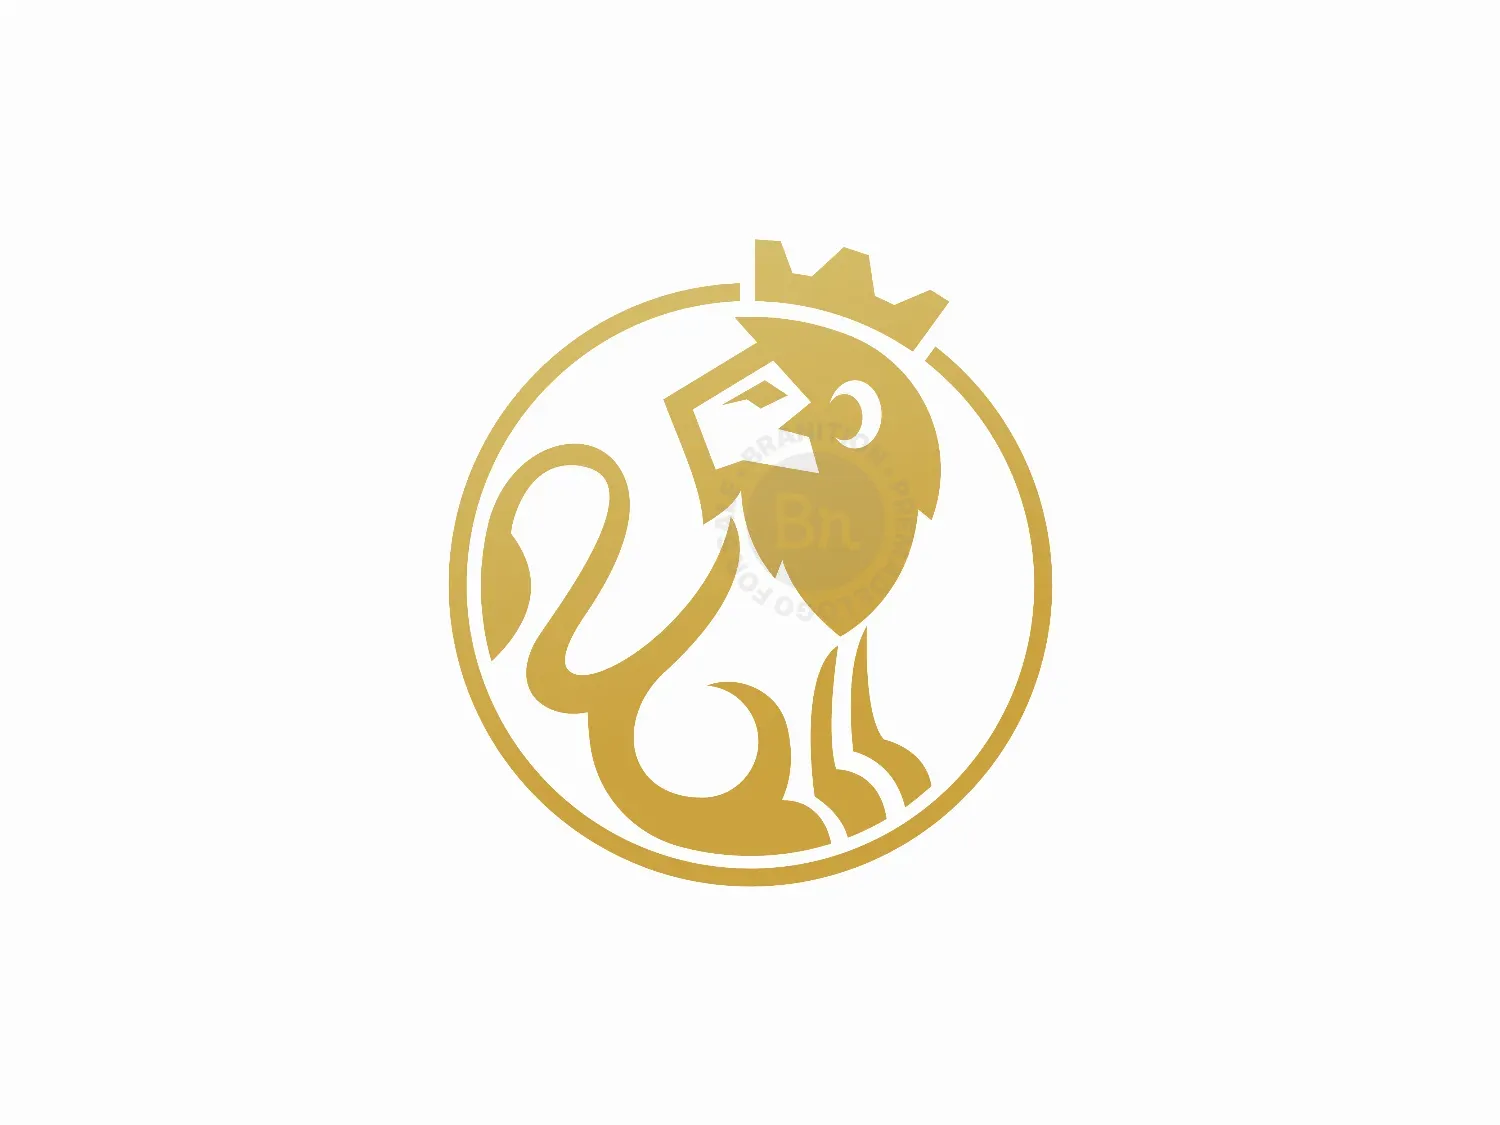 King Lion Logo Design || How To Make Logo Design In Pixellab - YouTube